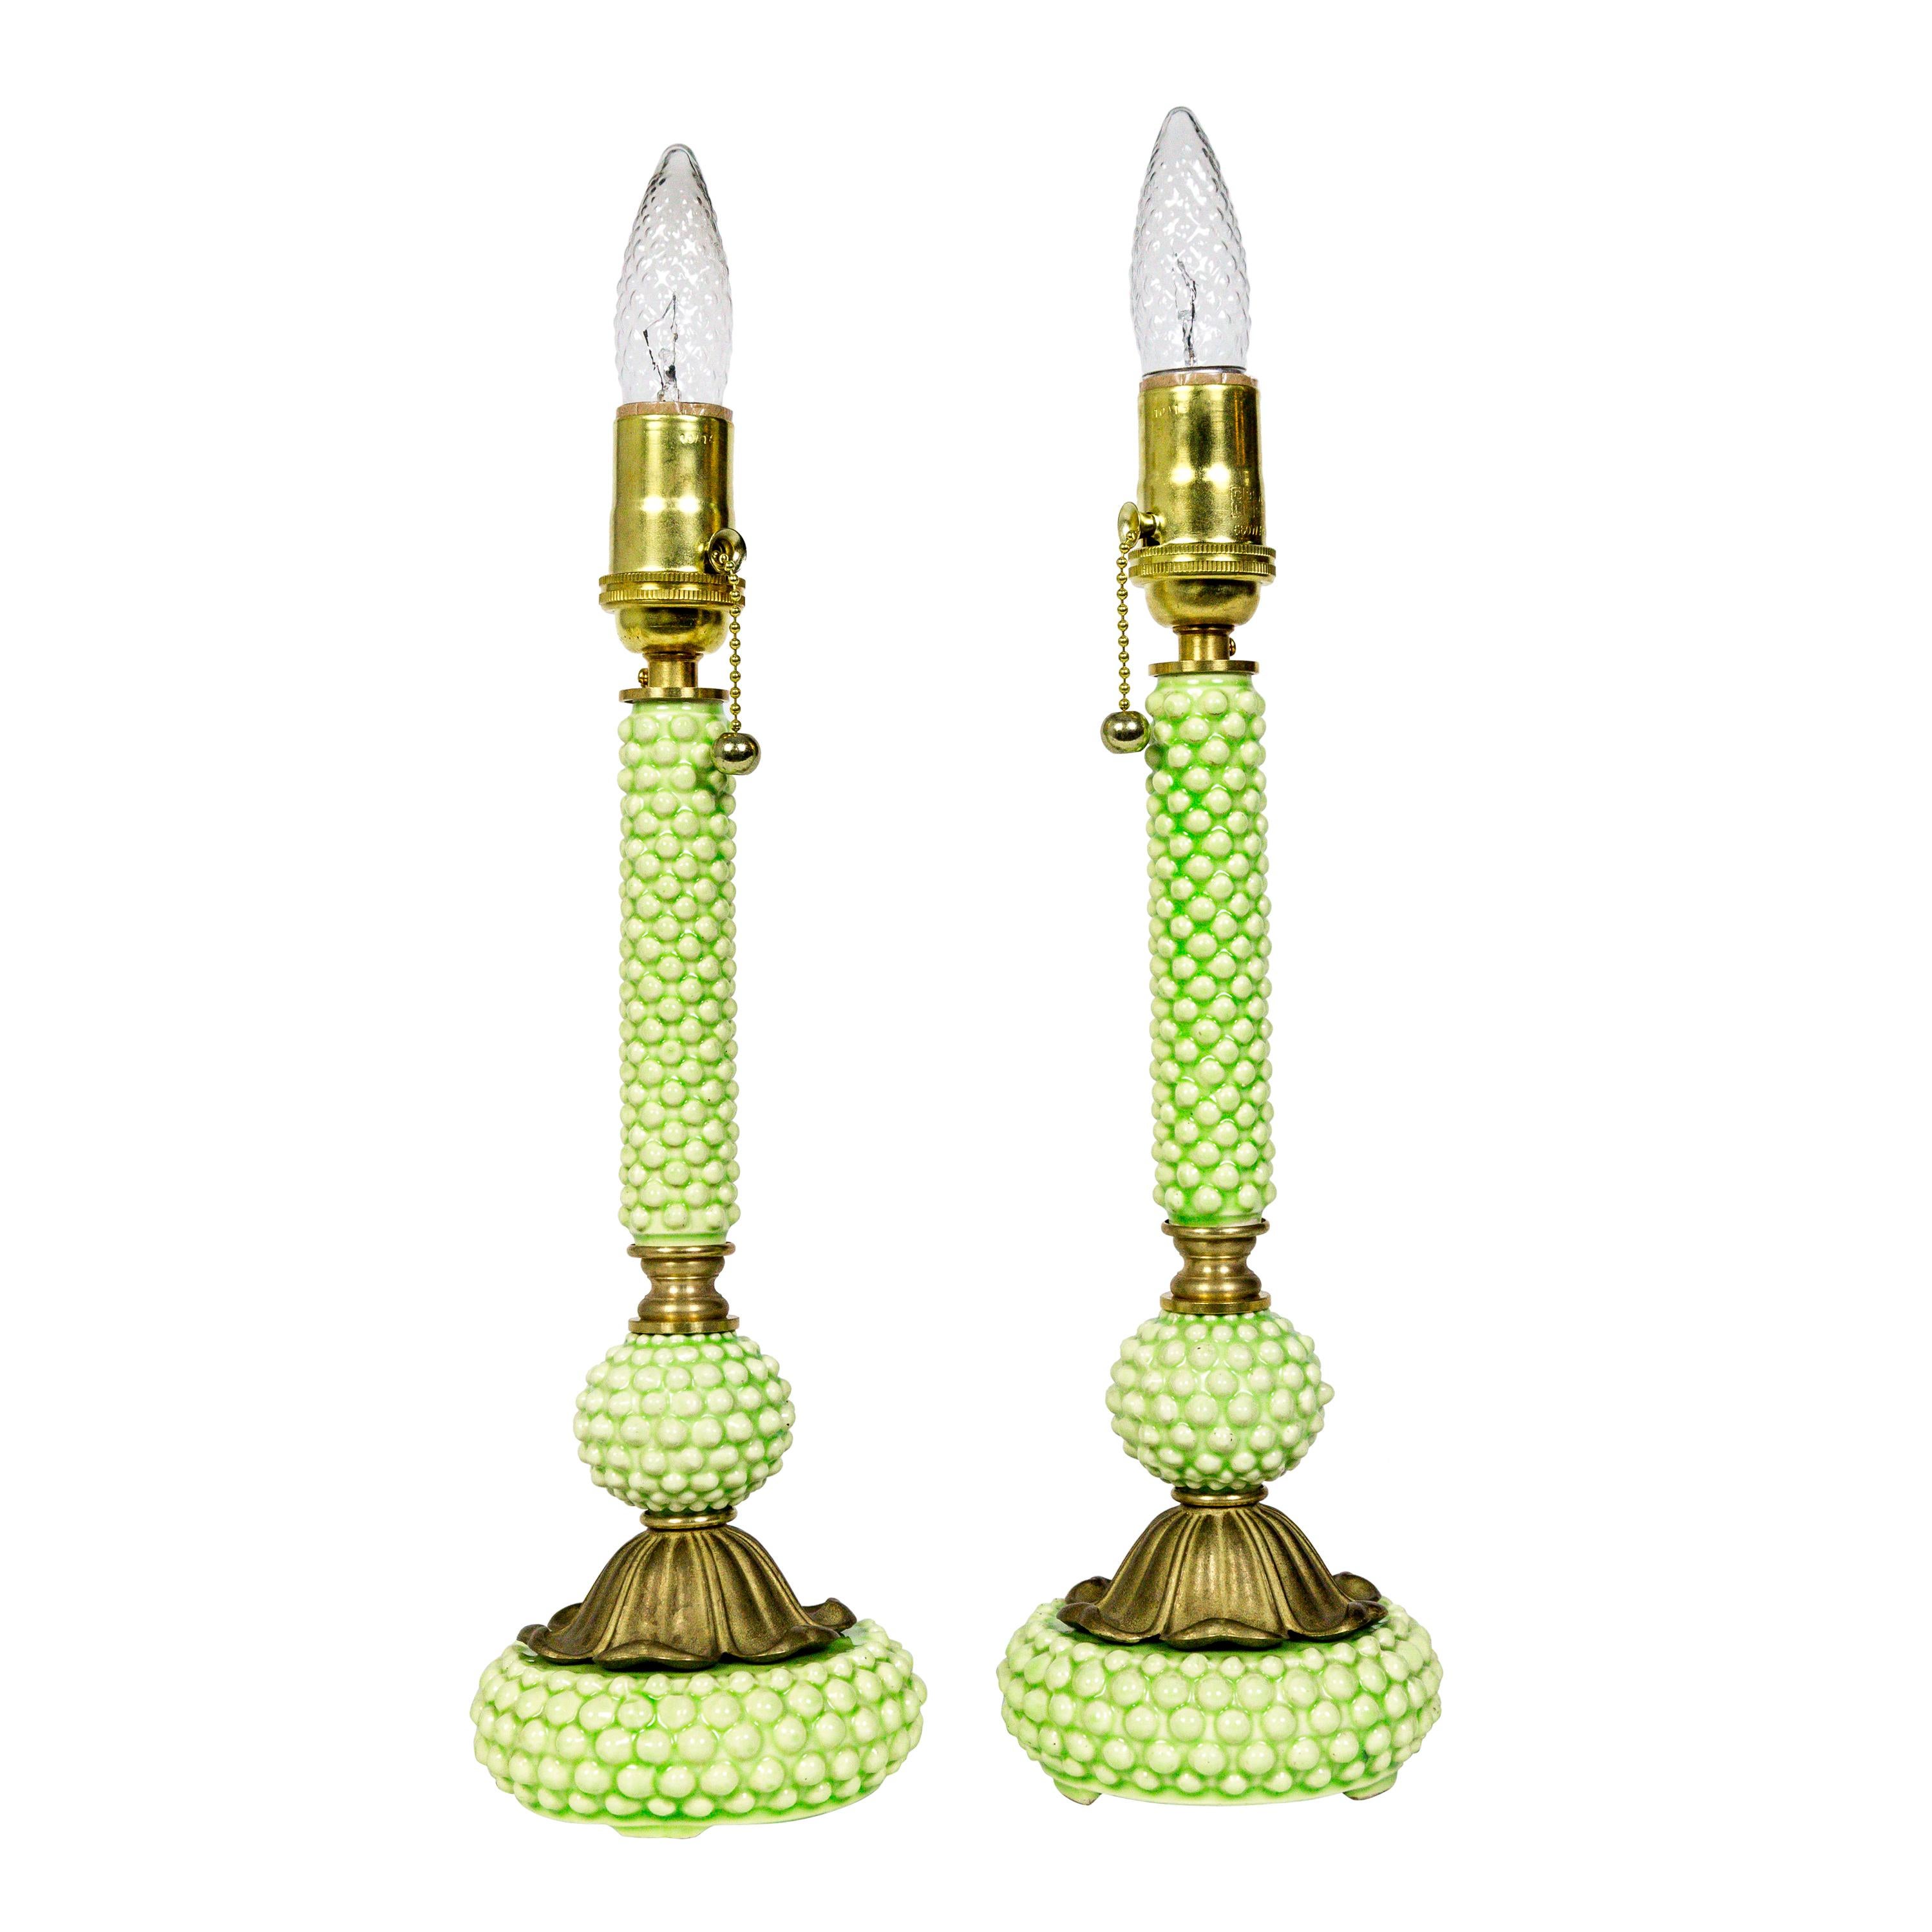 Grüne Hobnail-Keramik- und Messinglampen 'Paar' aus der Jahrhundertmitte